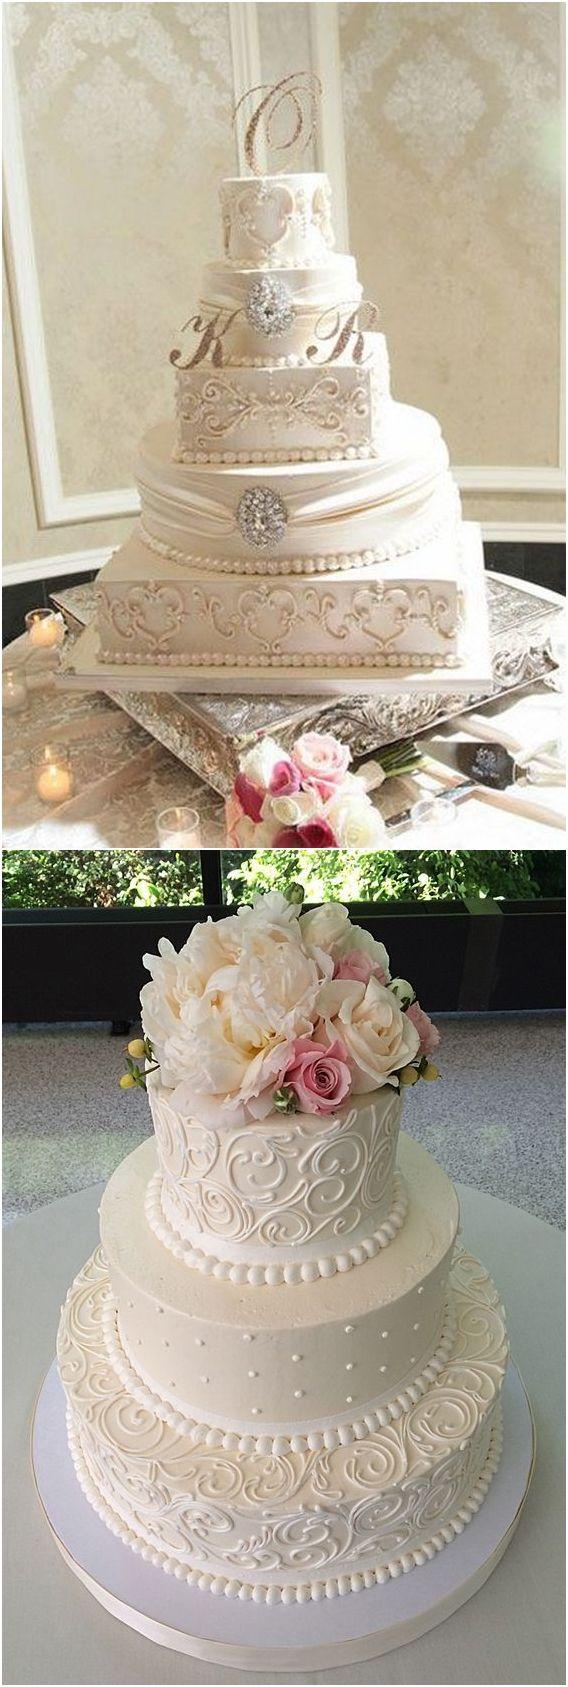 زفاف - 50 Amazing Wedding Cake Ideas For Your Special Day!